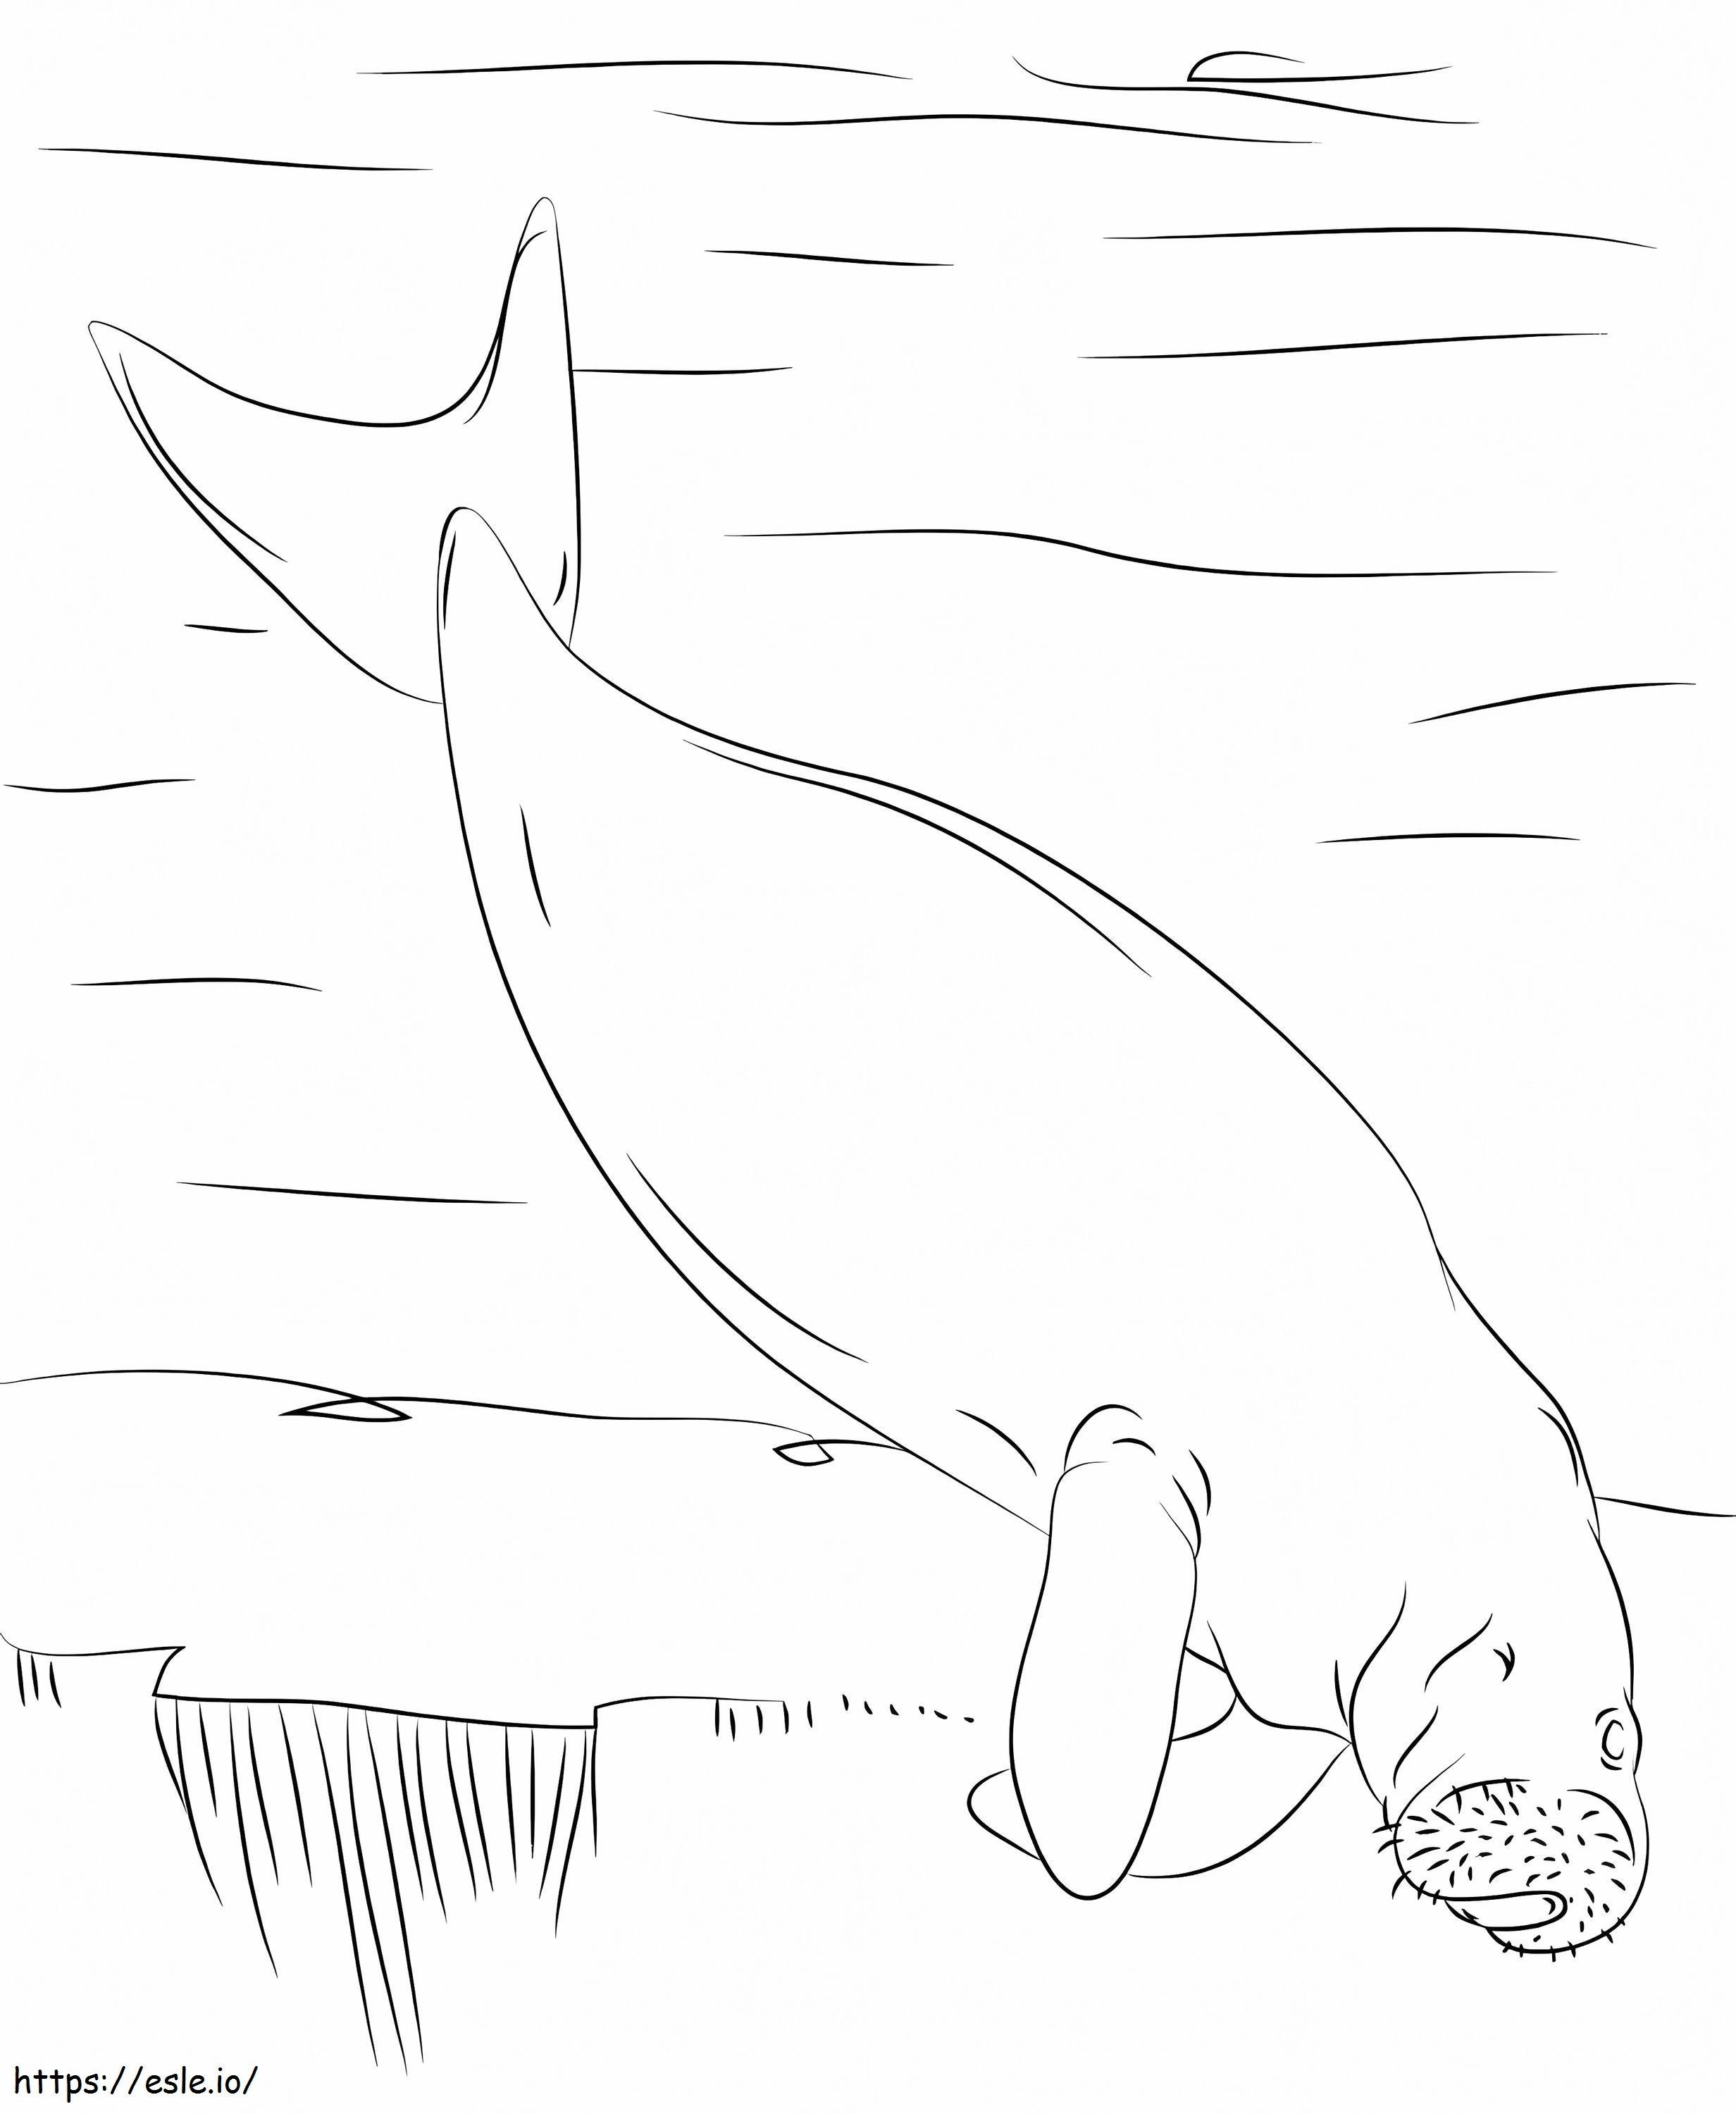 Nuoto del dugongo da colorare